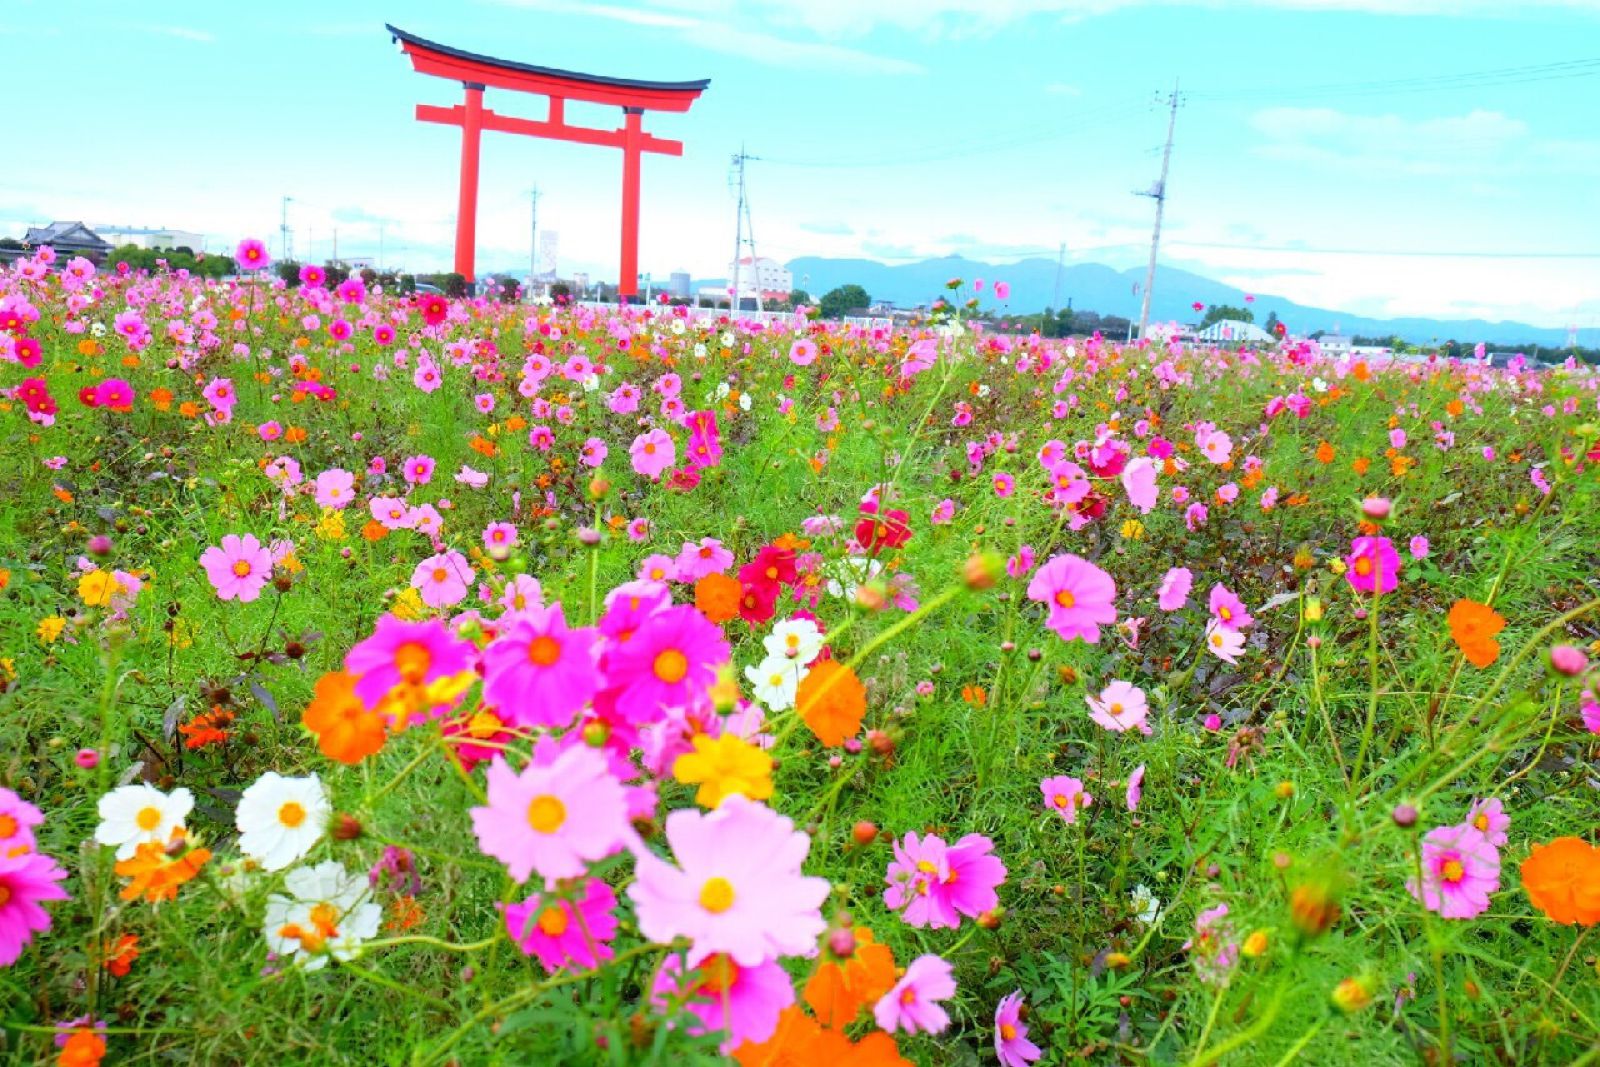 インスタ映えの秋 東京都内近郊で9月におすすめのお花畑12選 Retrip リトリップ